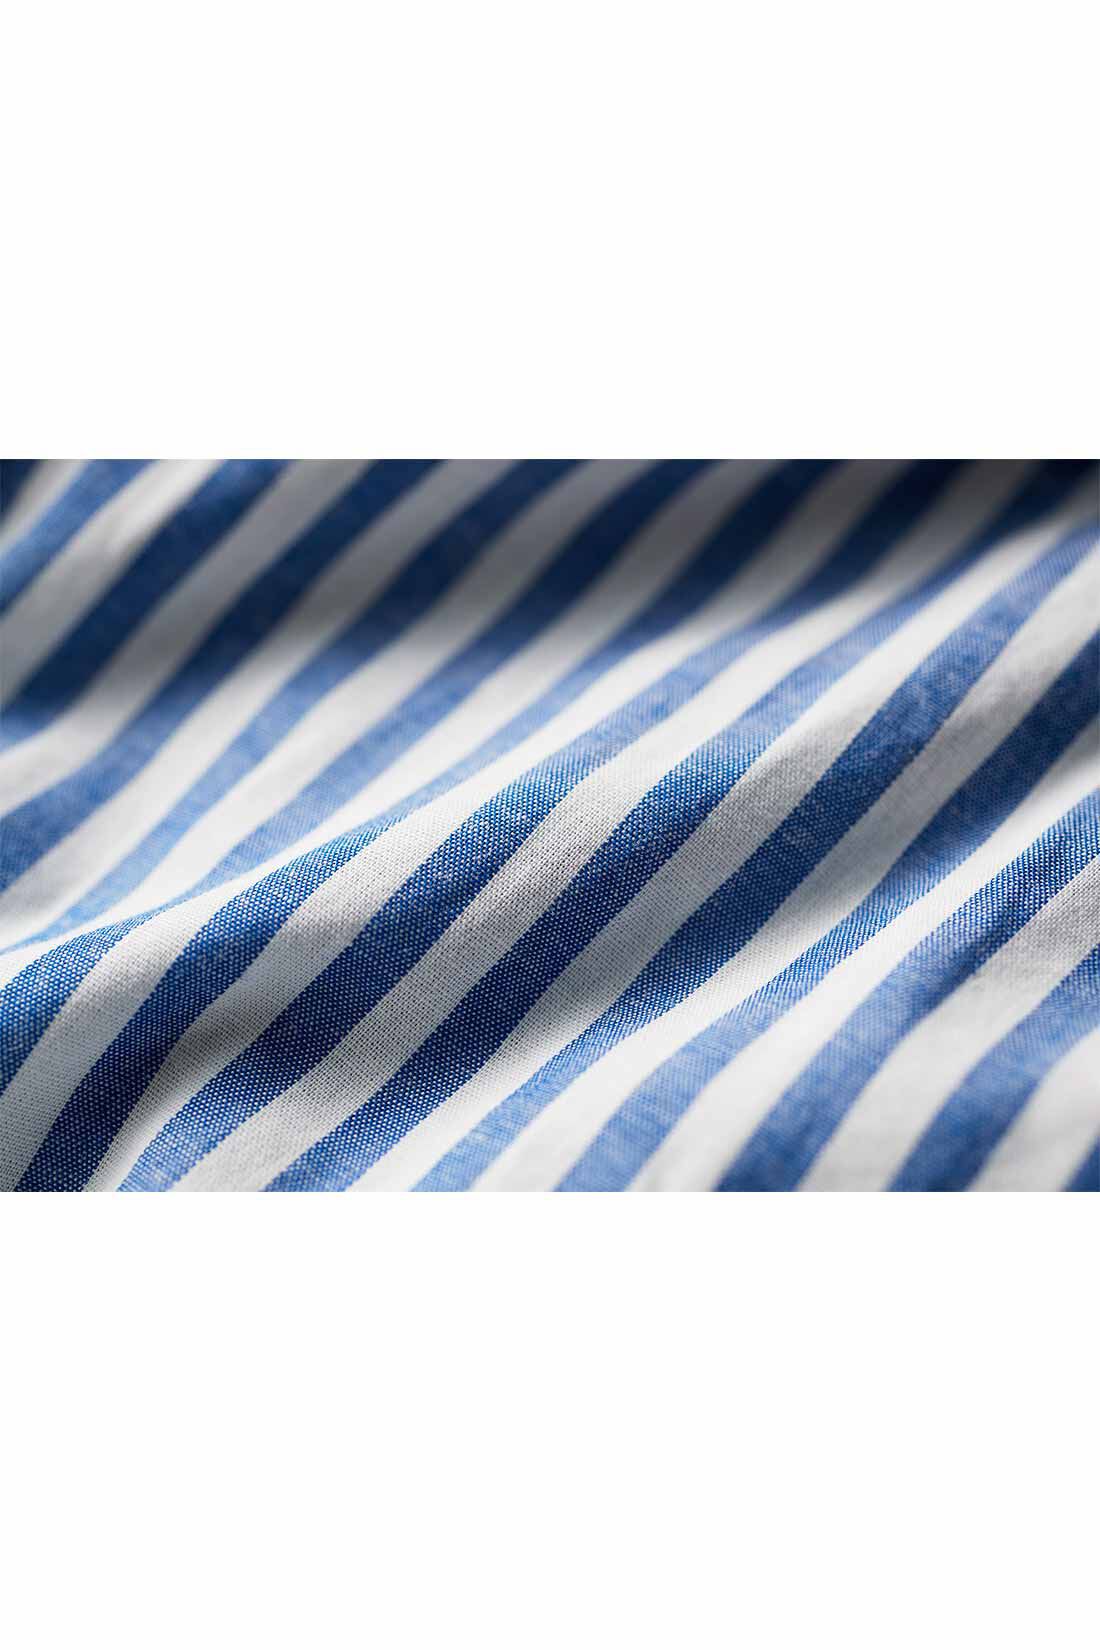 THREE FIFTY STANDARD|THREE FIFTY STANDARD ストライプのギャザースカート〈ブルー〉|ムラ感のある糸を使用しながらもフラットに織り上げた播州織の先染め生地。